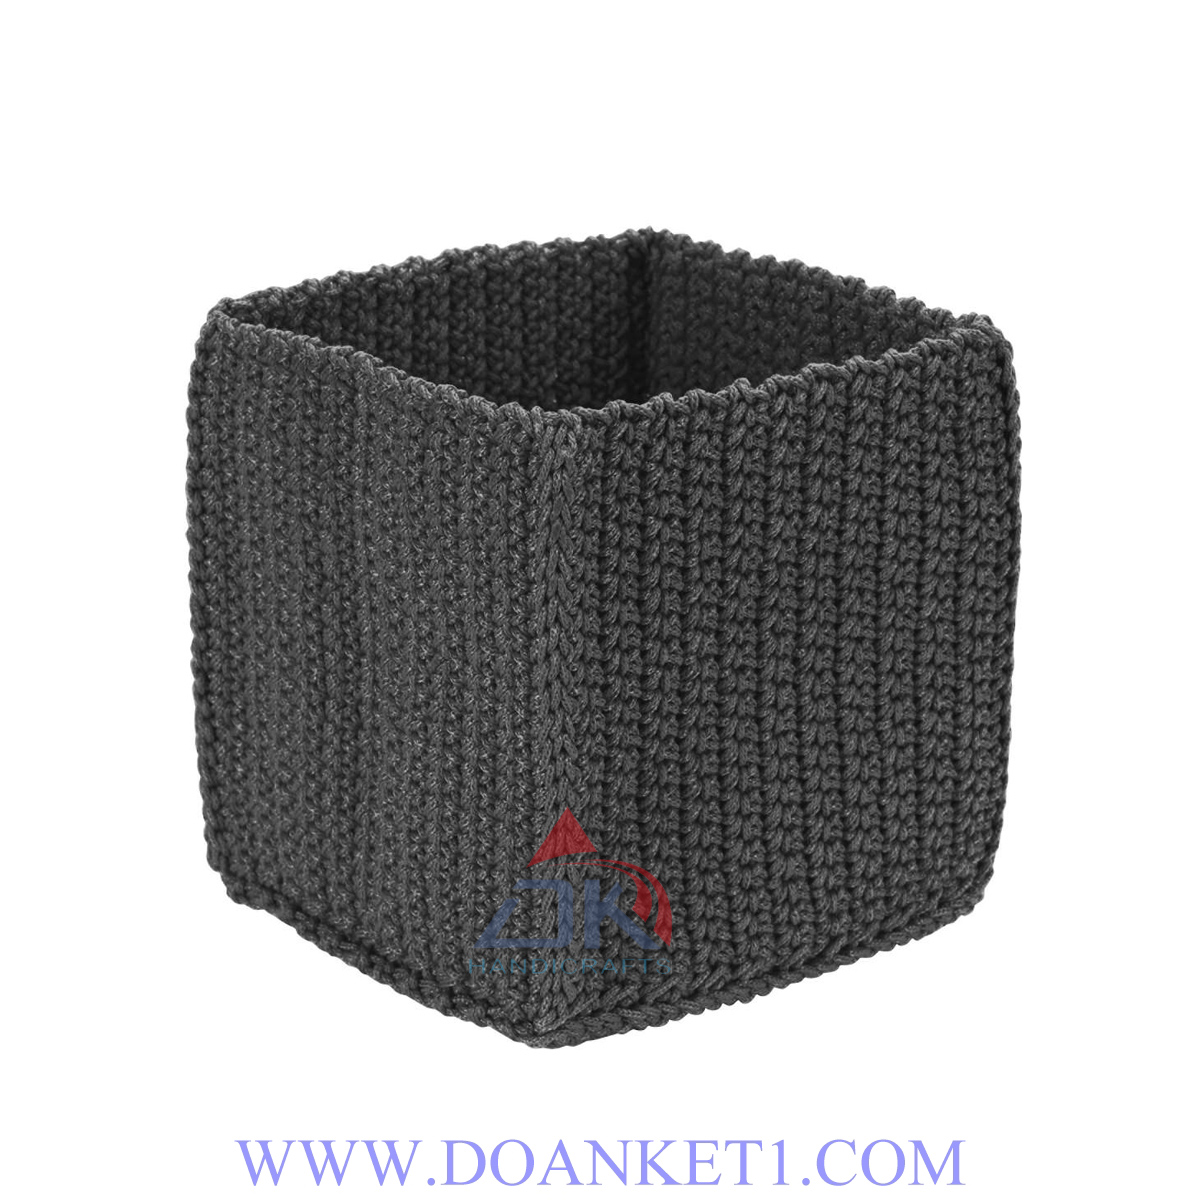 Textile Storage Basket # DK159